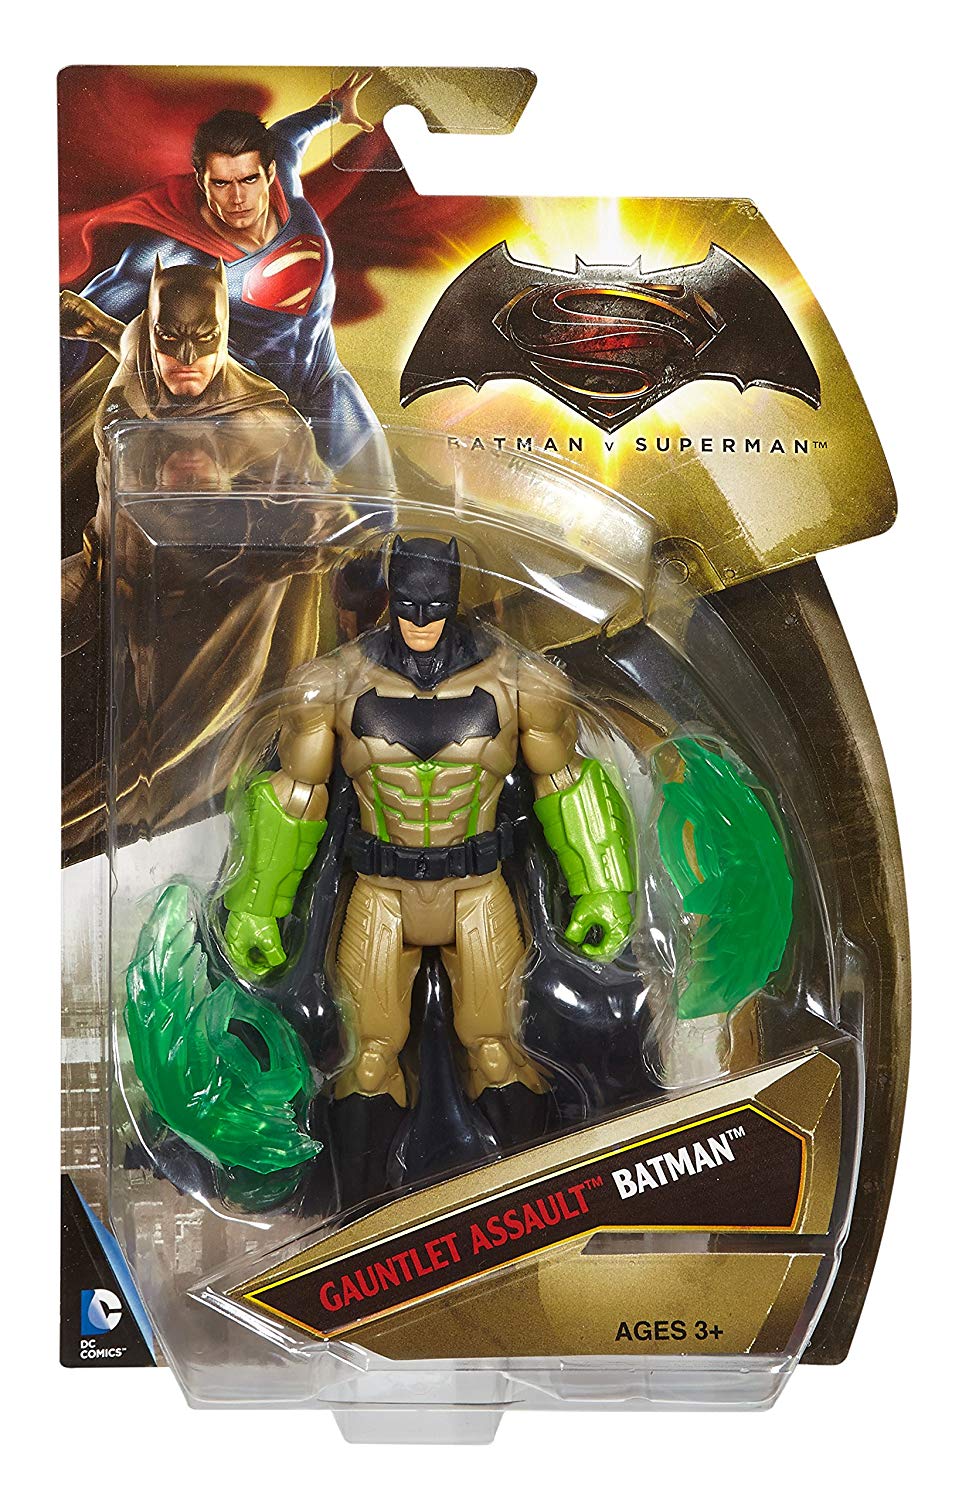 Mattel Batman v Superman Dawn Of Justice Gauntlet Assault Batman Figure Assort A